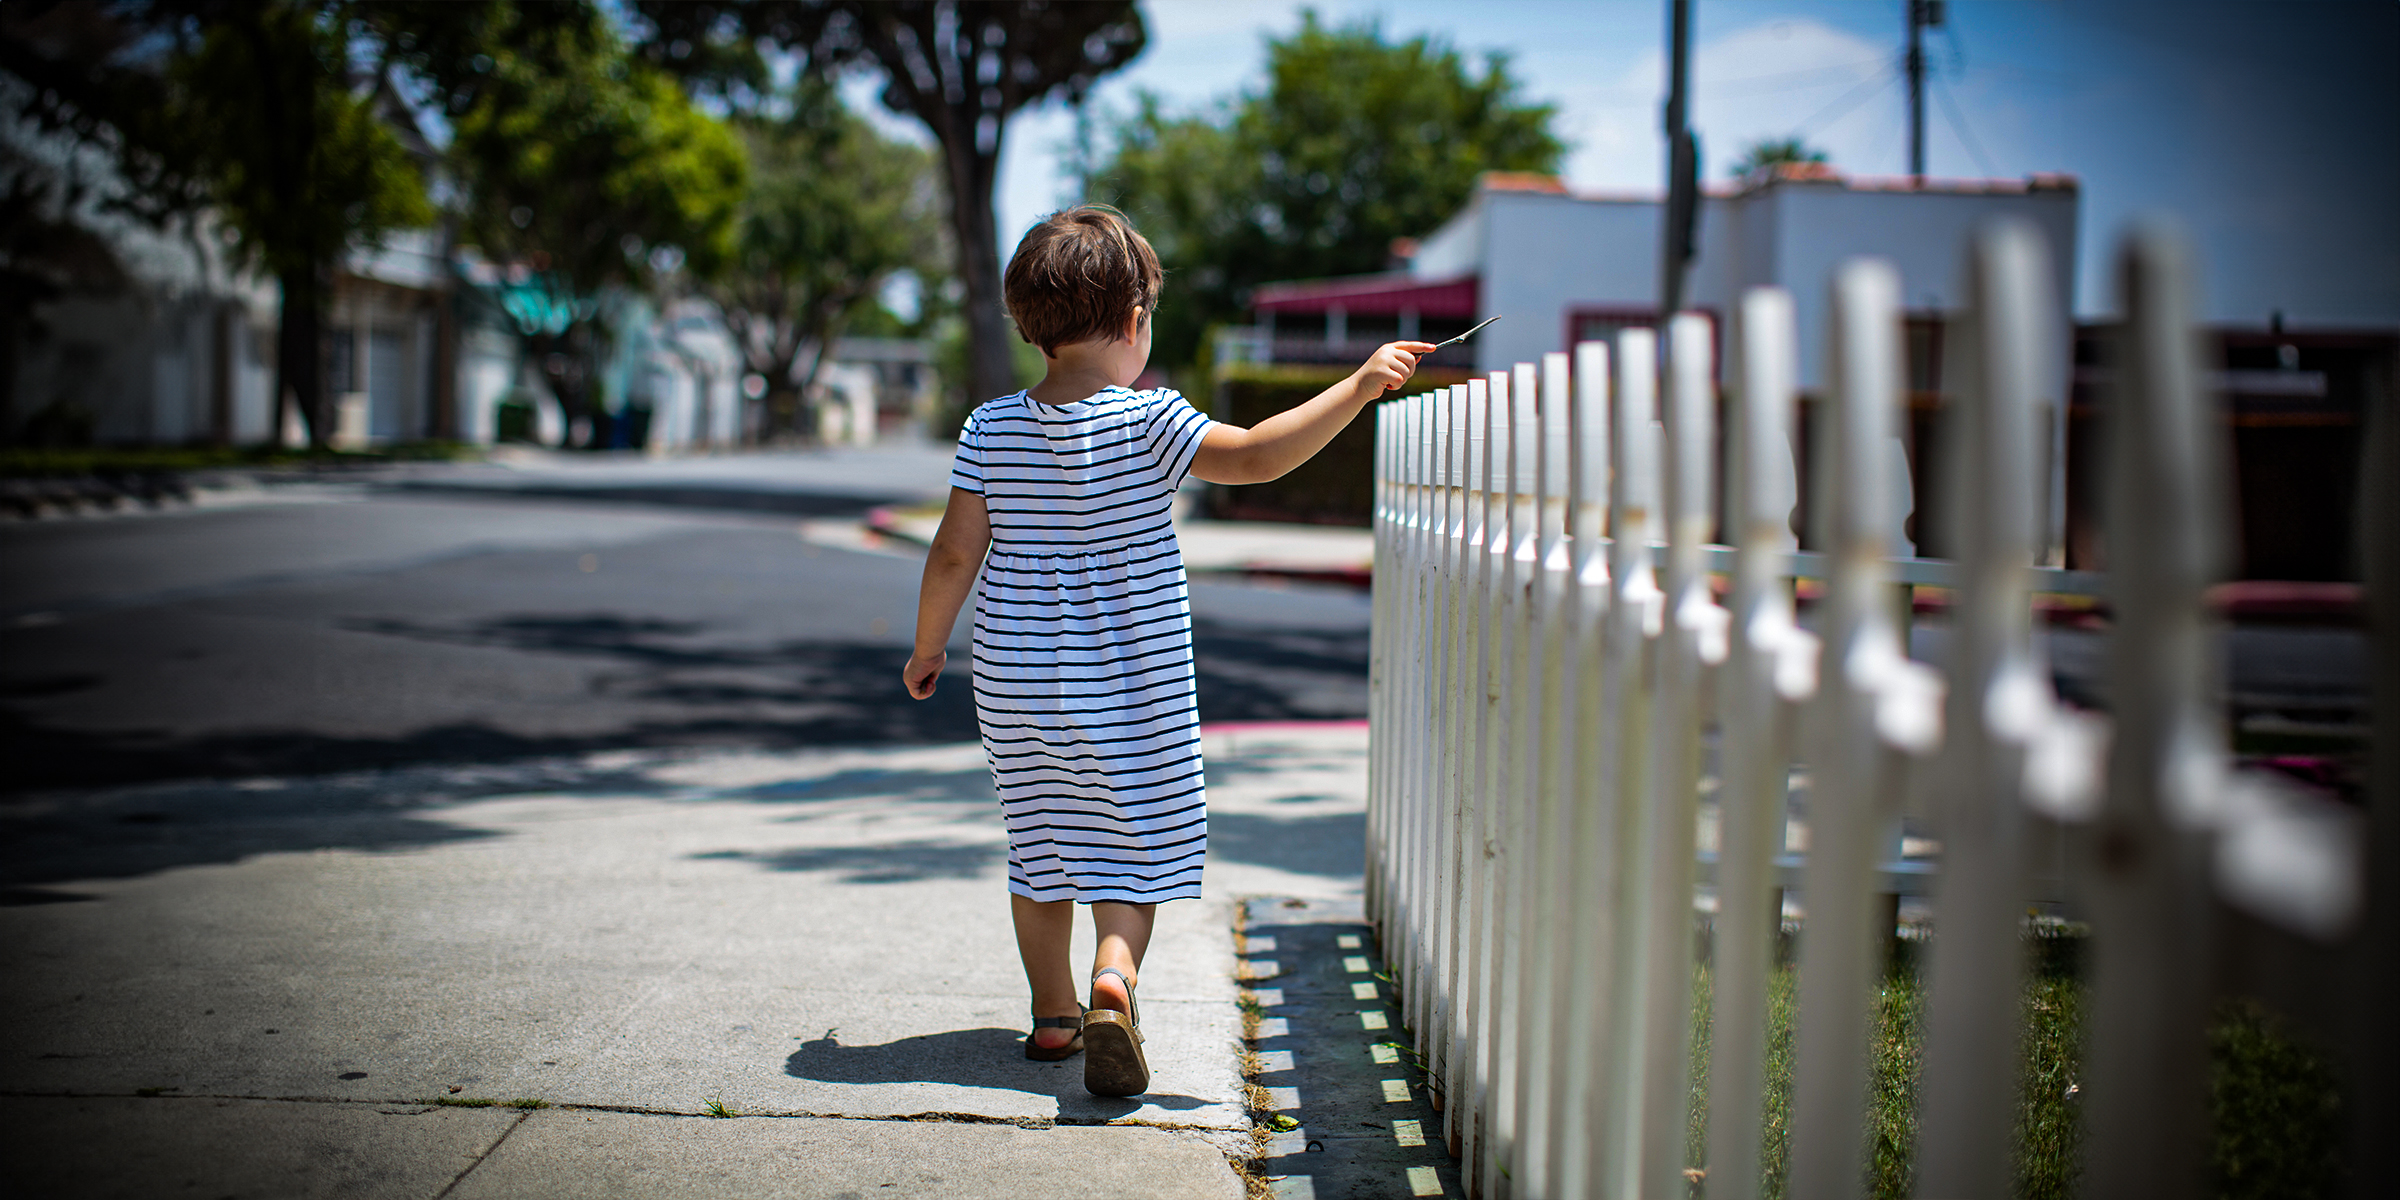 Una niña caminando cerca de una valla | Fuente: Shutterstock